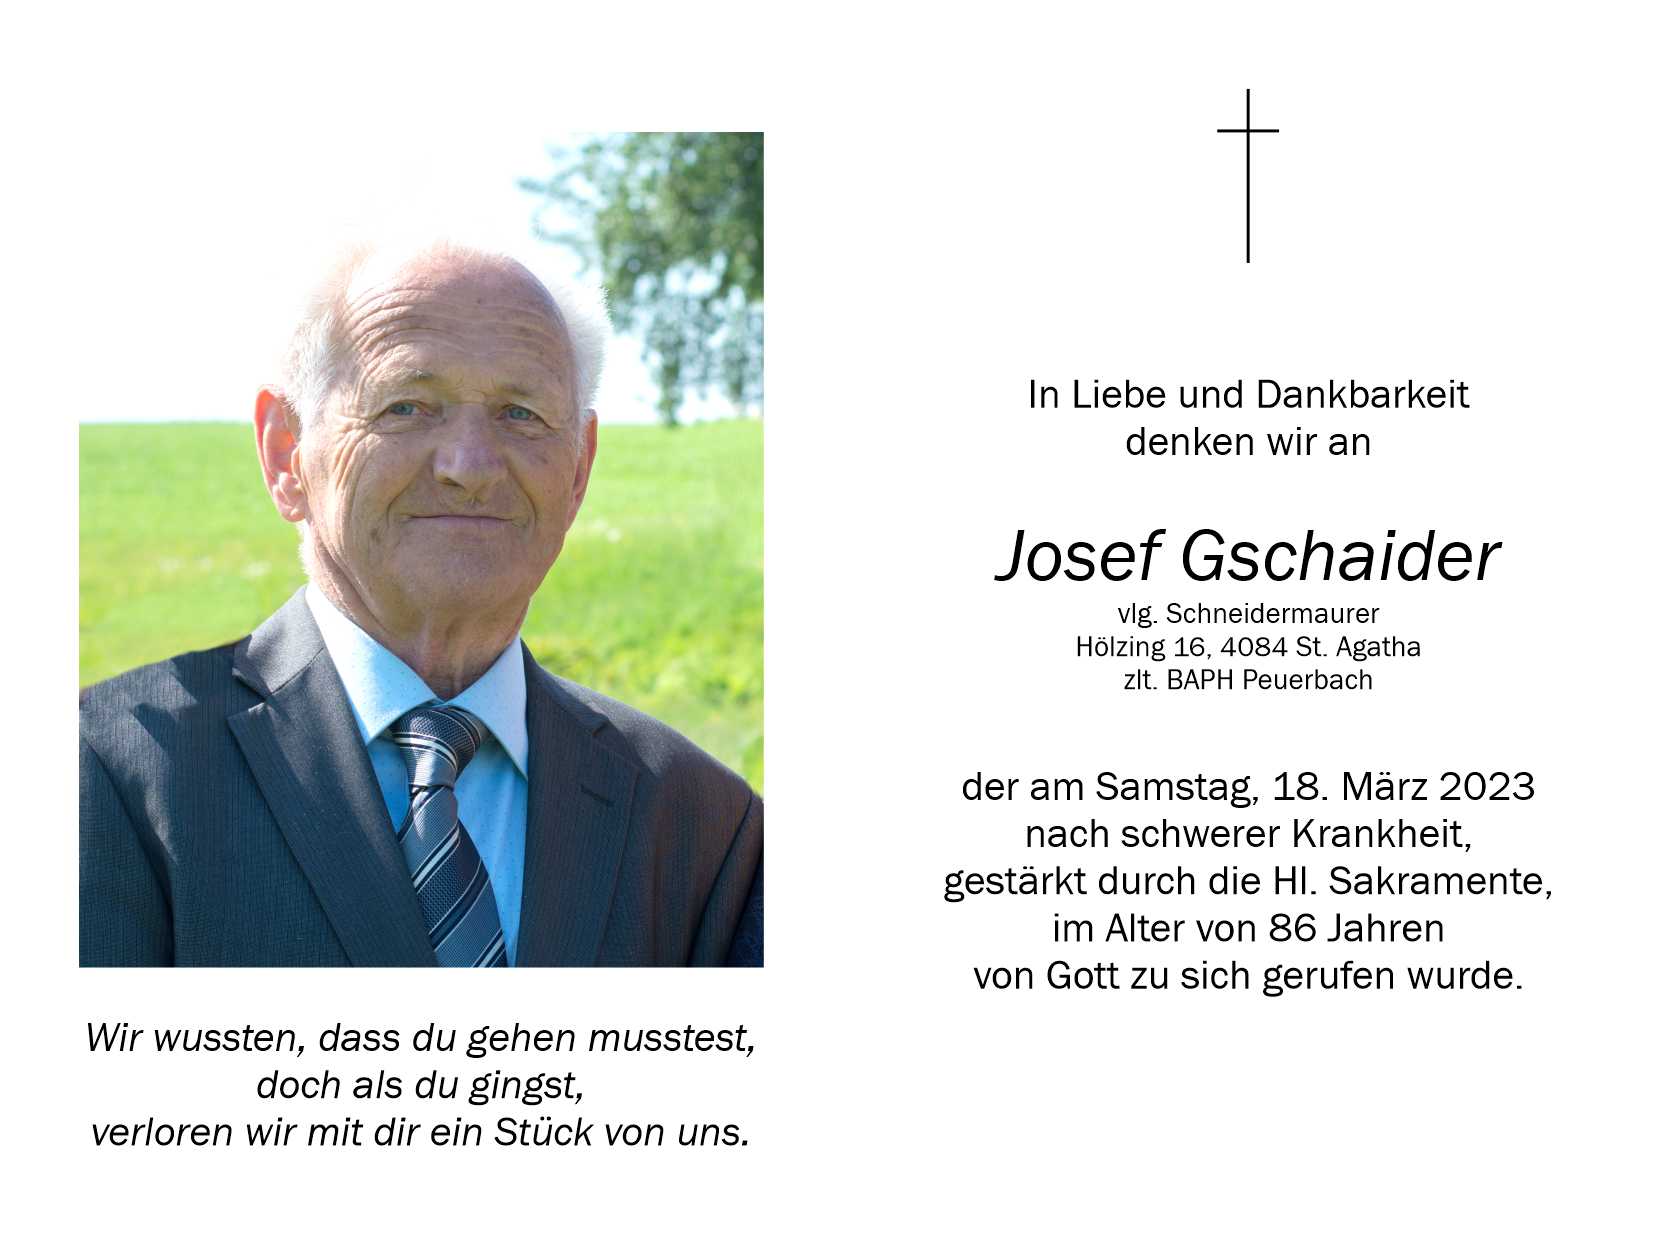 Josef  Gschaider, vlg. Schneidermaurer